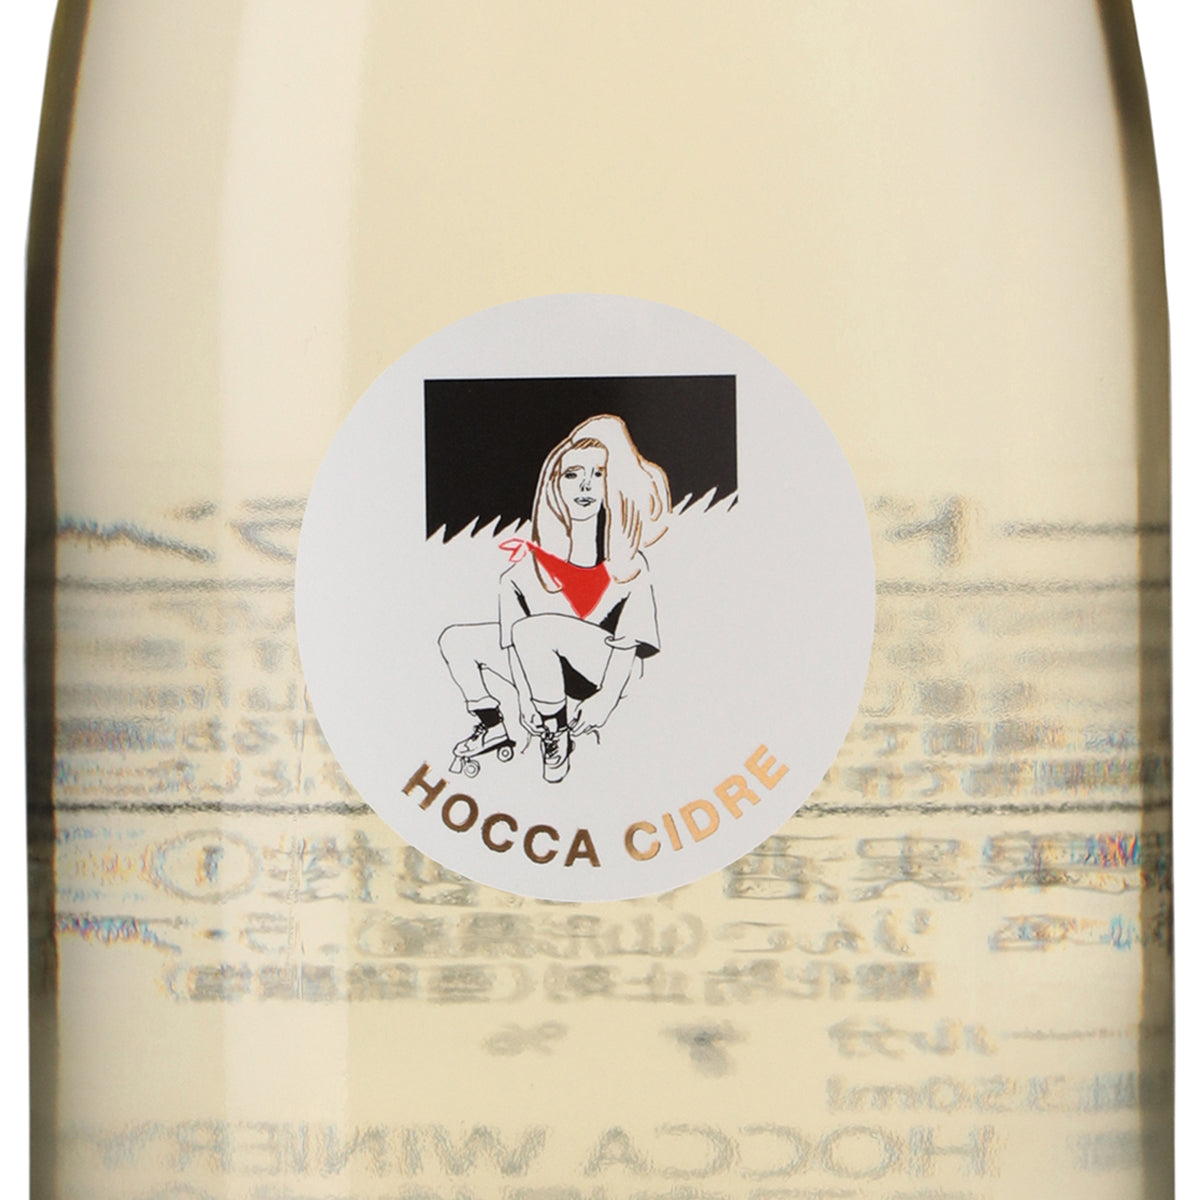 HOCCA Cidre La France Pear［350ml］